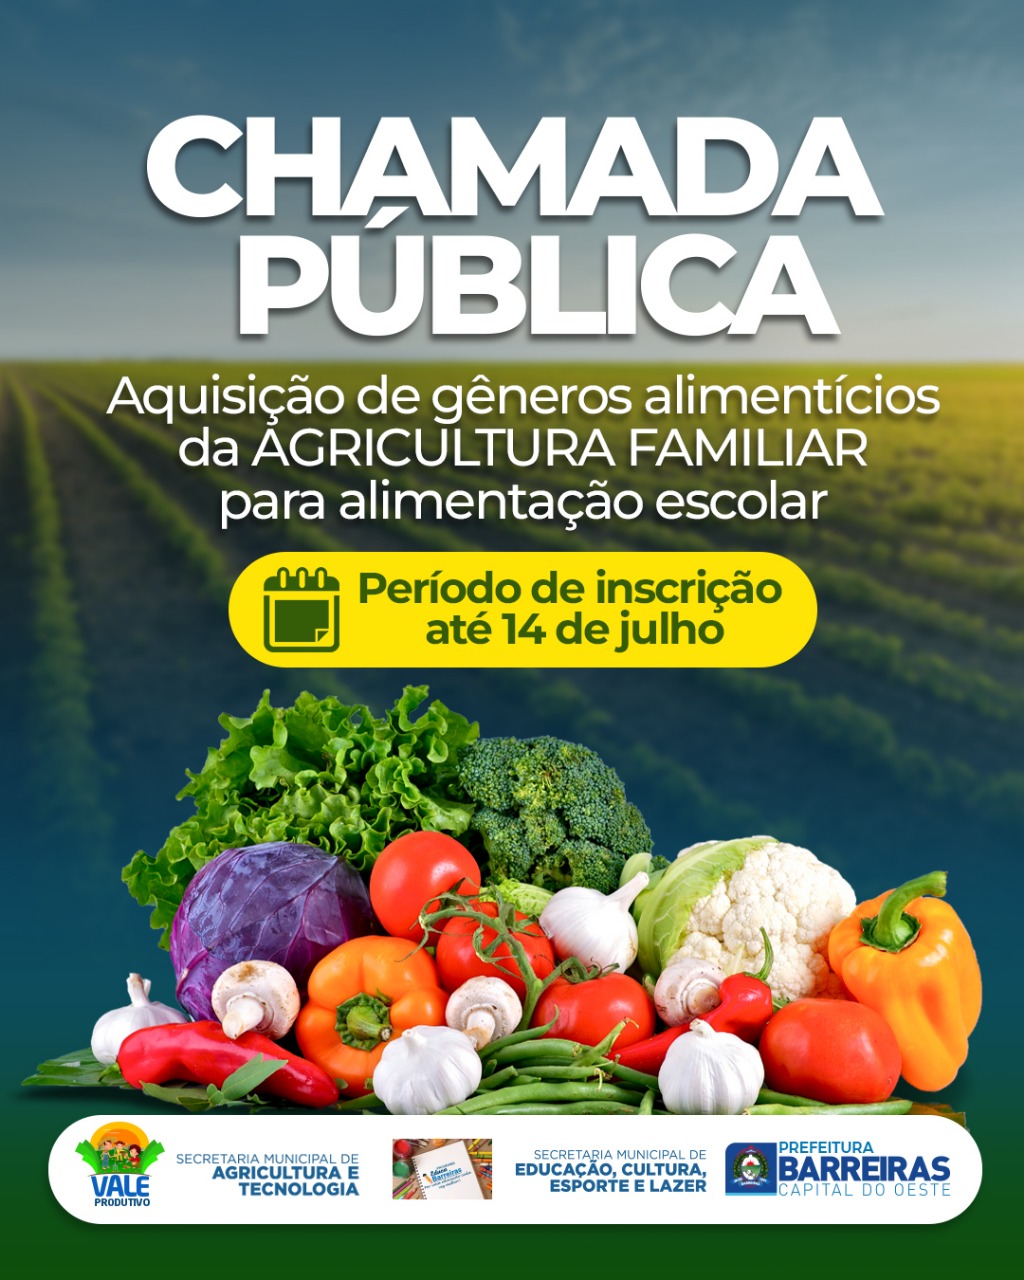 Prefeitura de Barreiras abre chamamento público para aquisição de alimentos da Agricultura Familiar